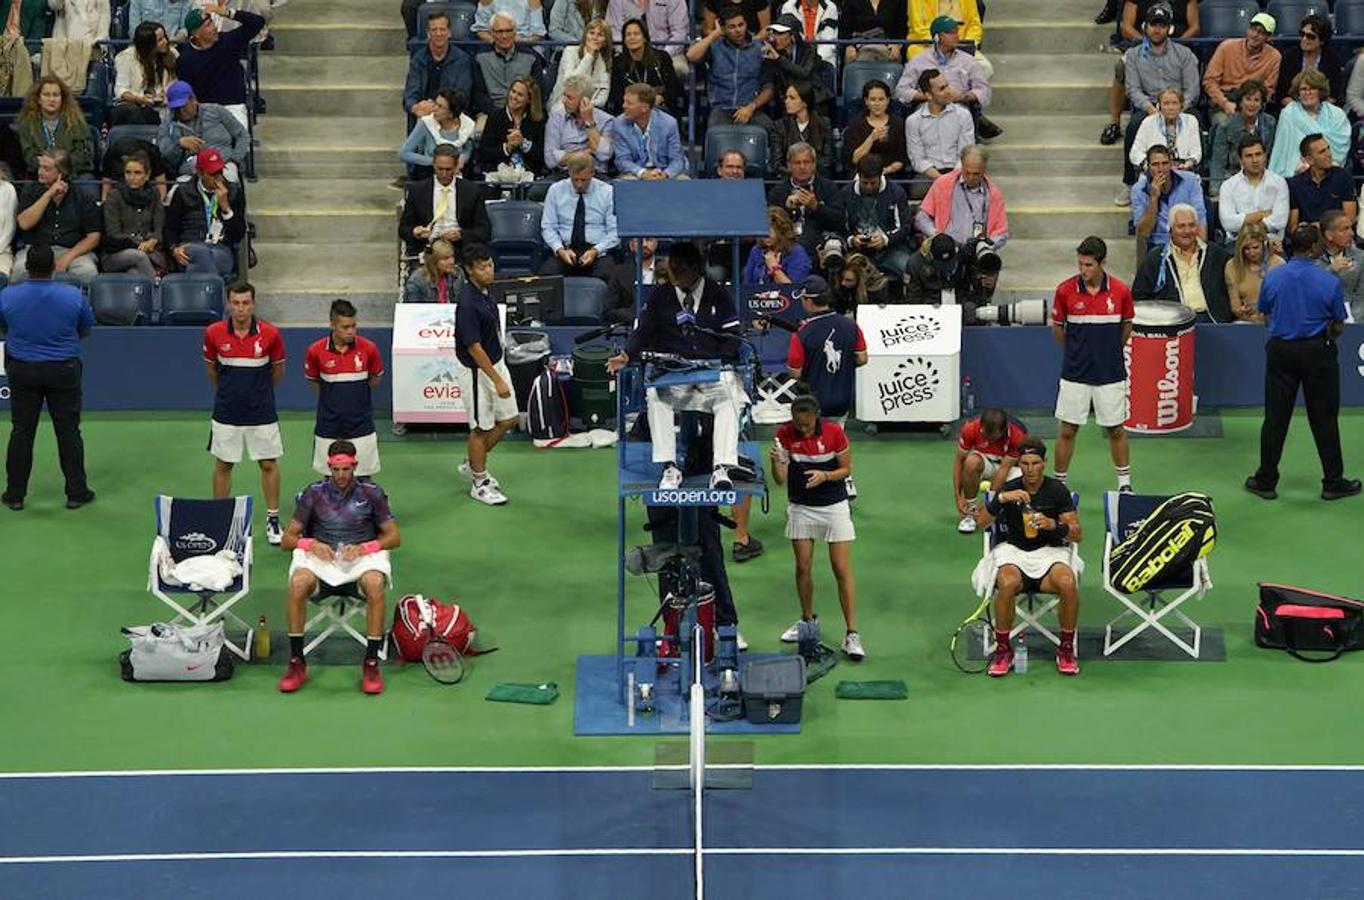 La arrolladora semifinal del US Open de Nadal contra Del Potro, en imágenes